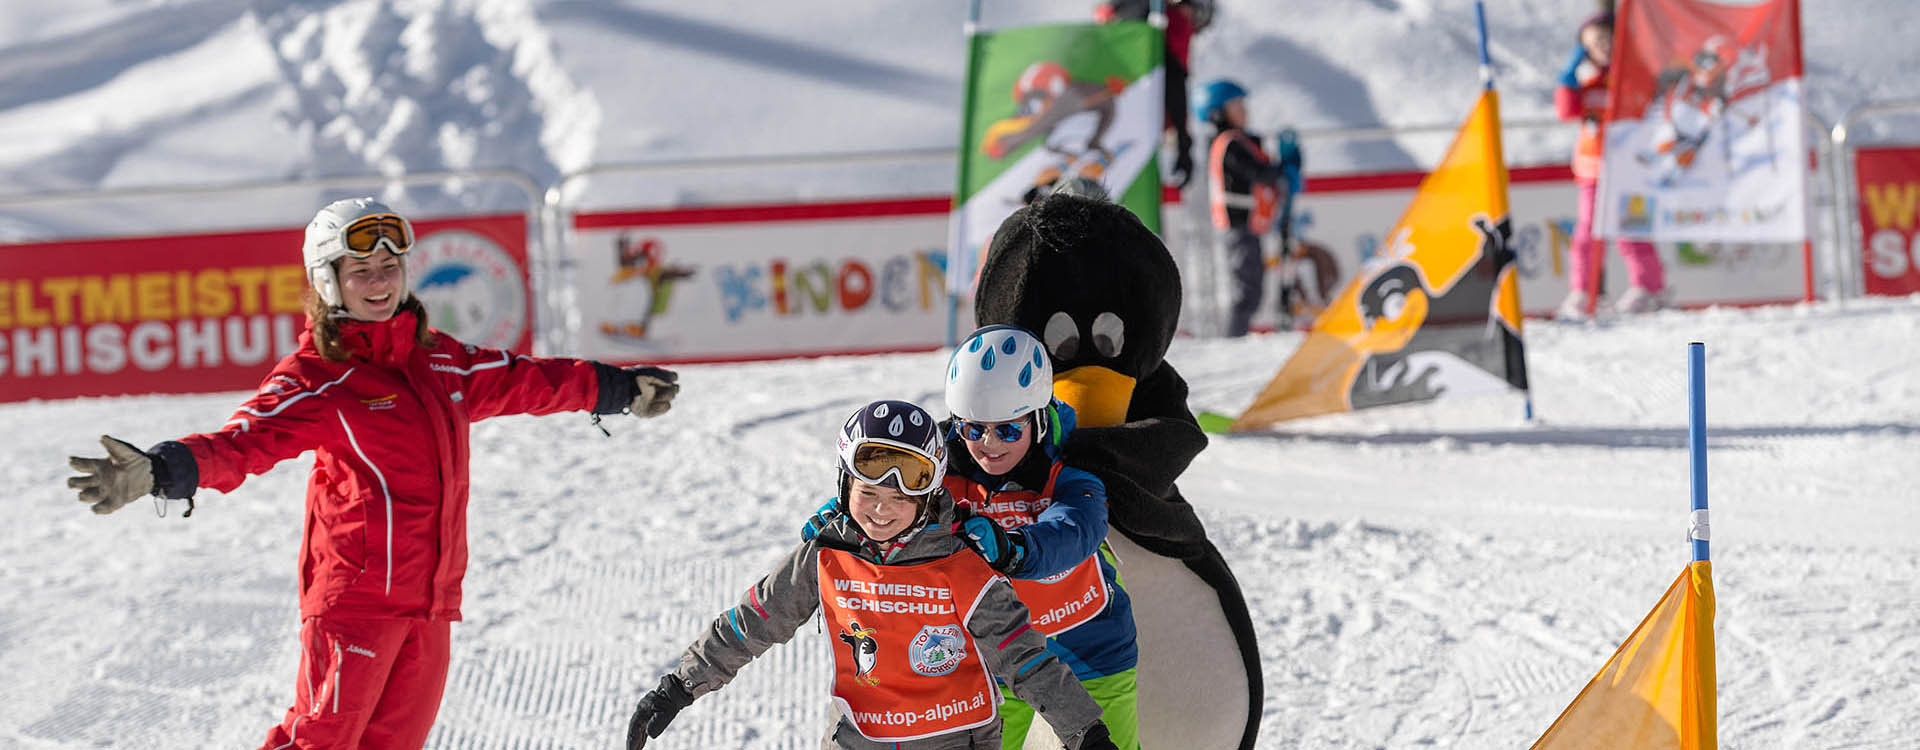 Schikurse für Kinder – Schischule Top Alpin in Altenmarkt-Zauchensee, Ski amadé